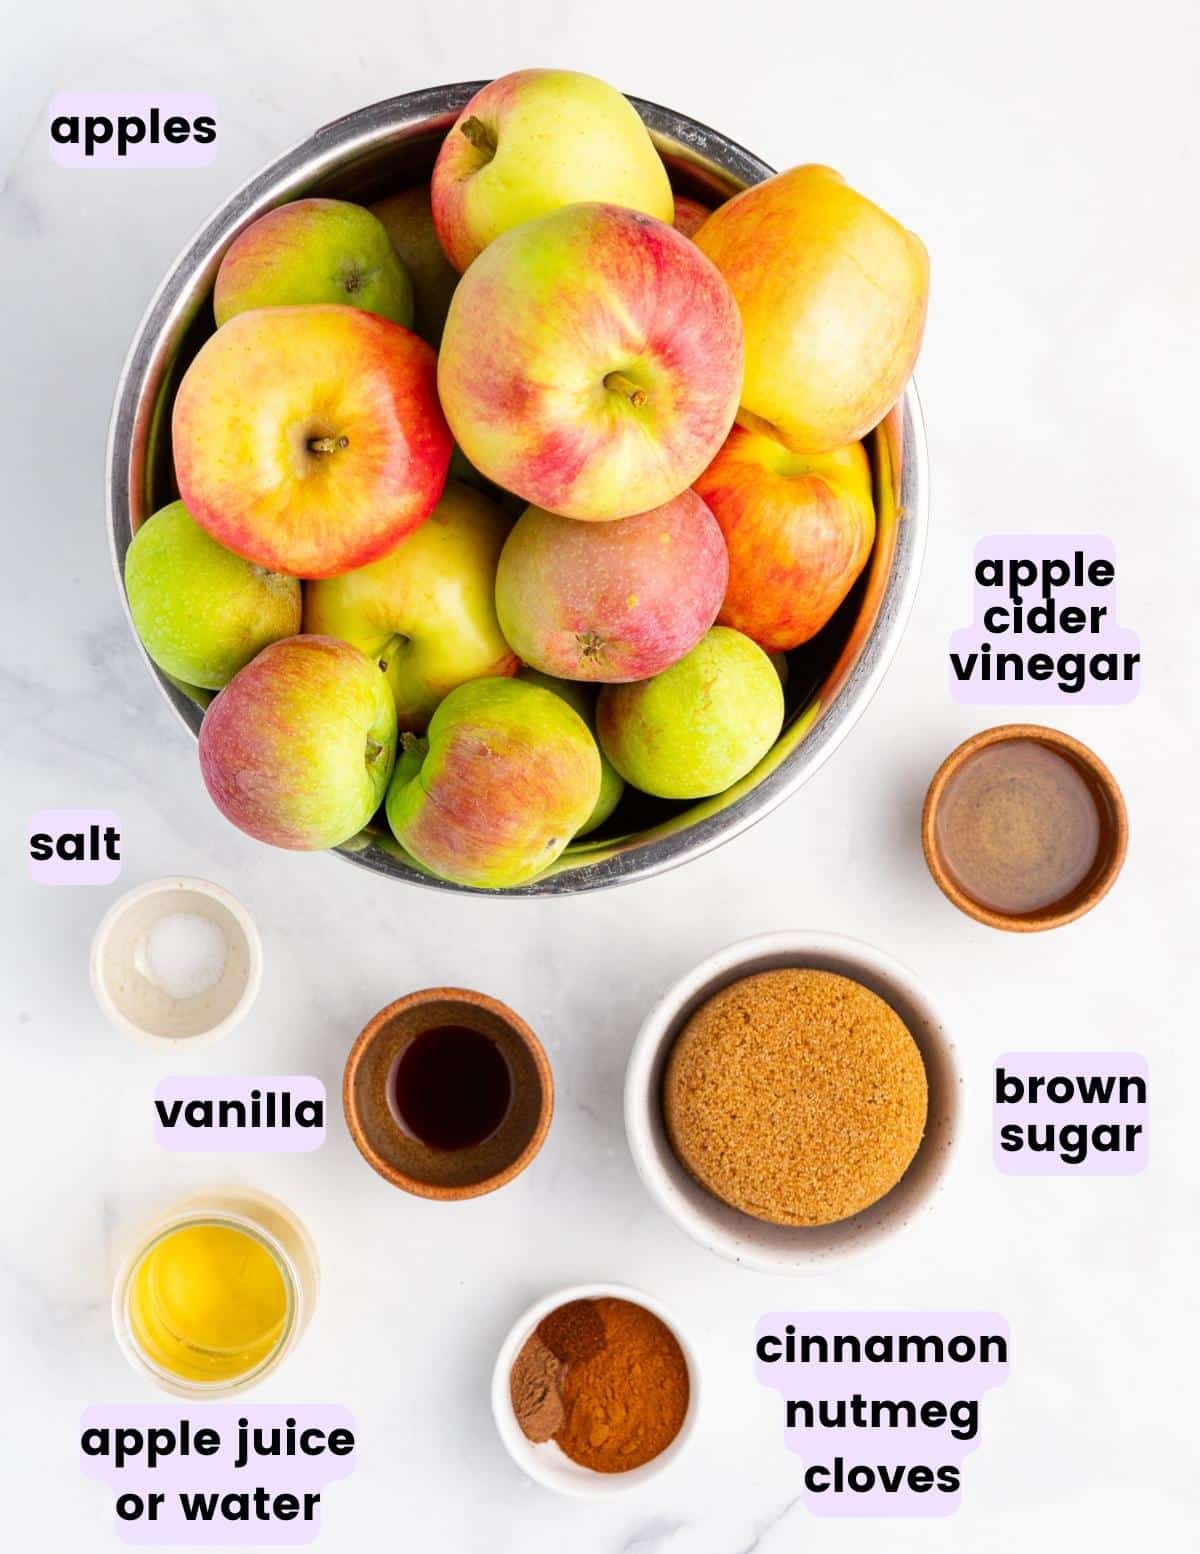 apples, salt, apple cider vinegar, brown sugar, vanilla, apple juice, cinnamon, nutmeg, and cloves